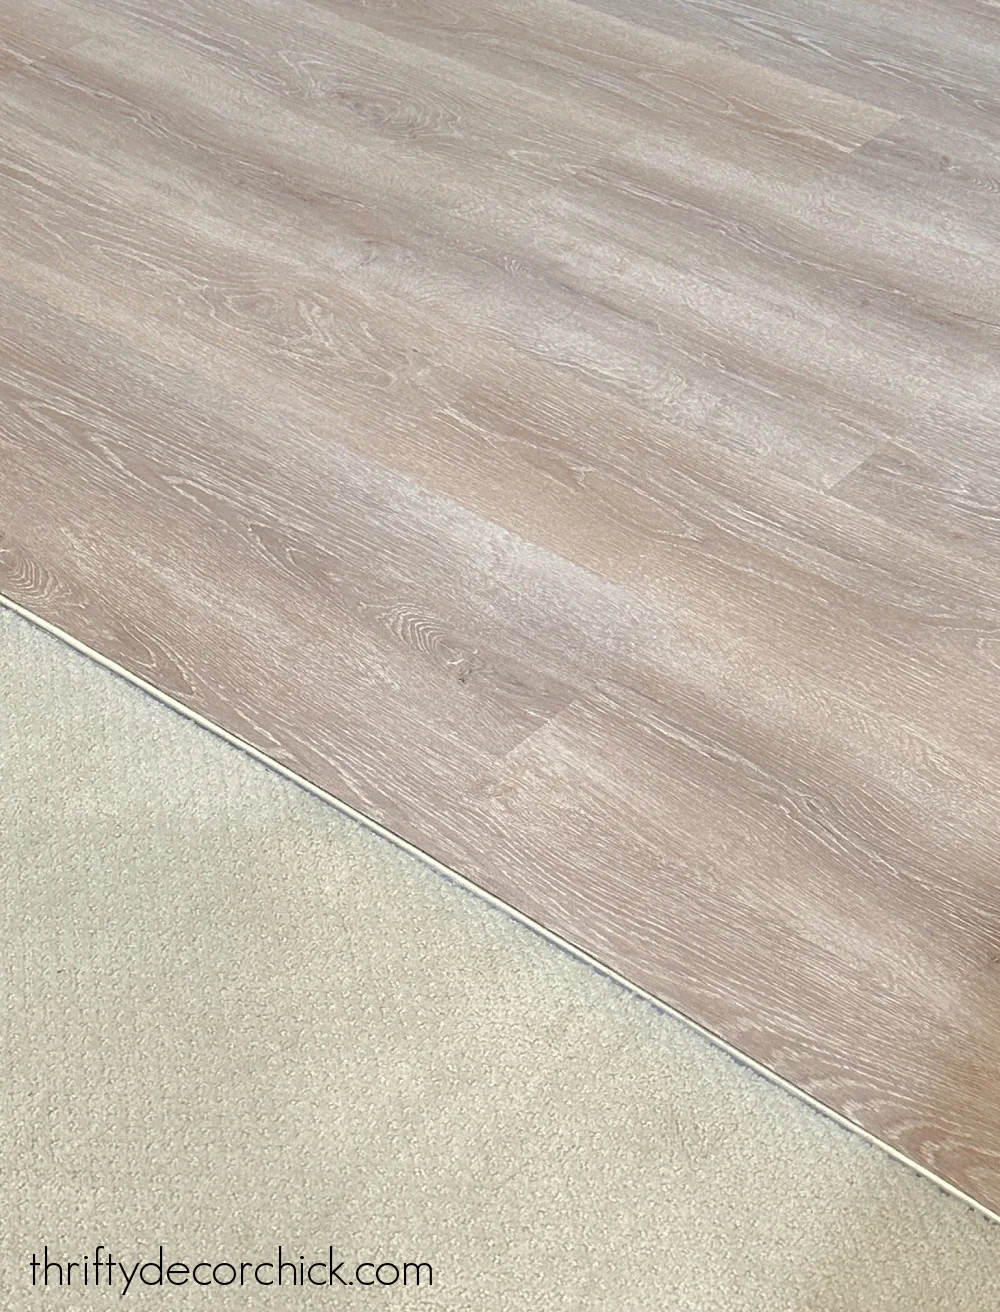 carpet and LVP flooring transition